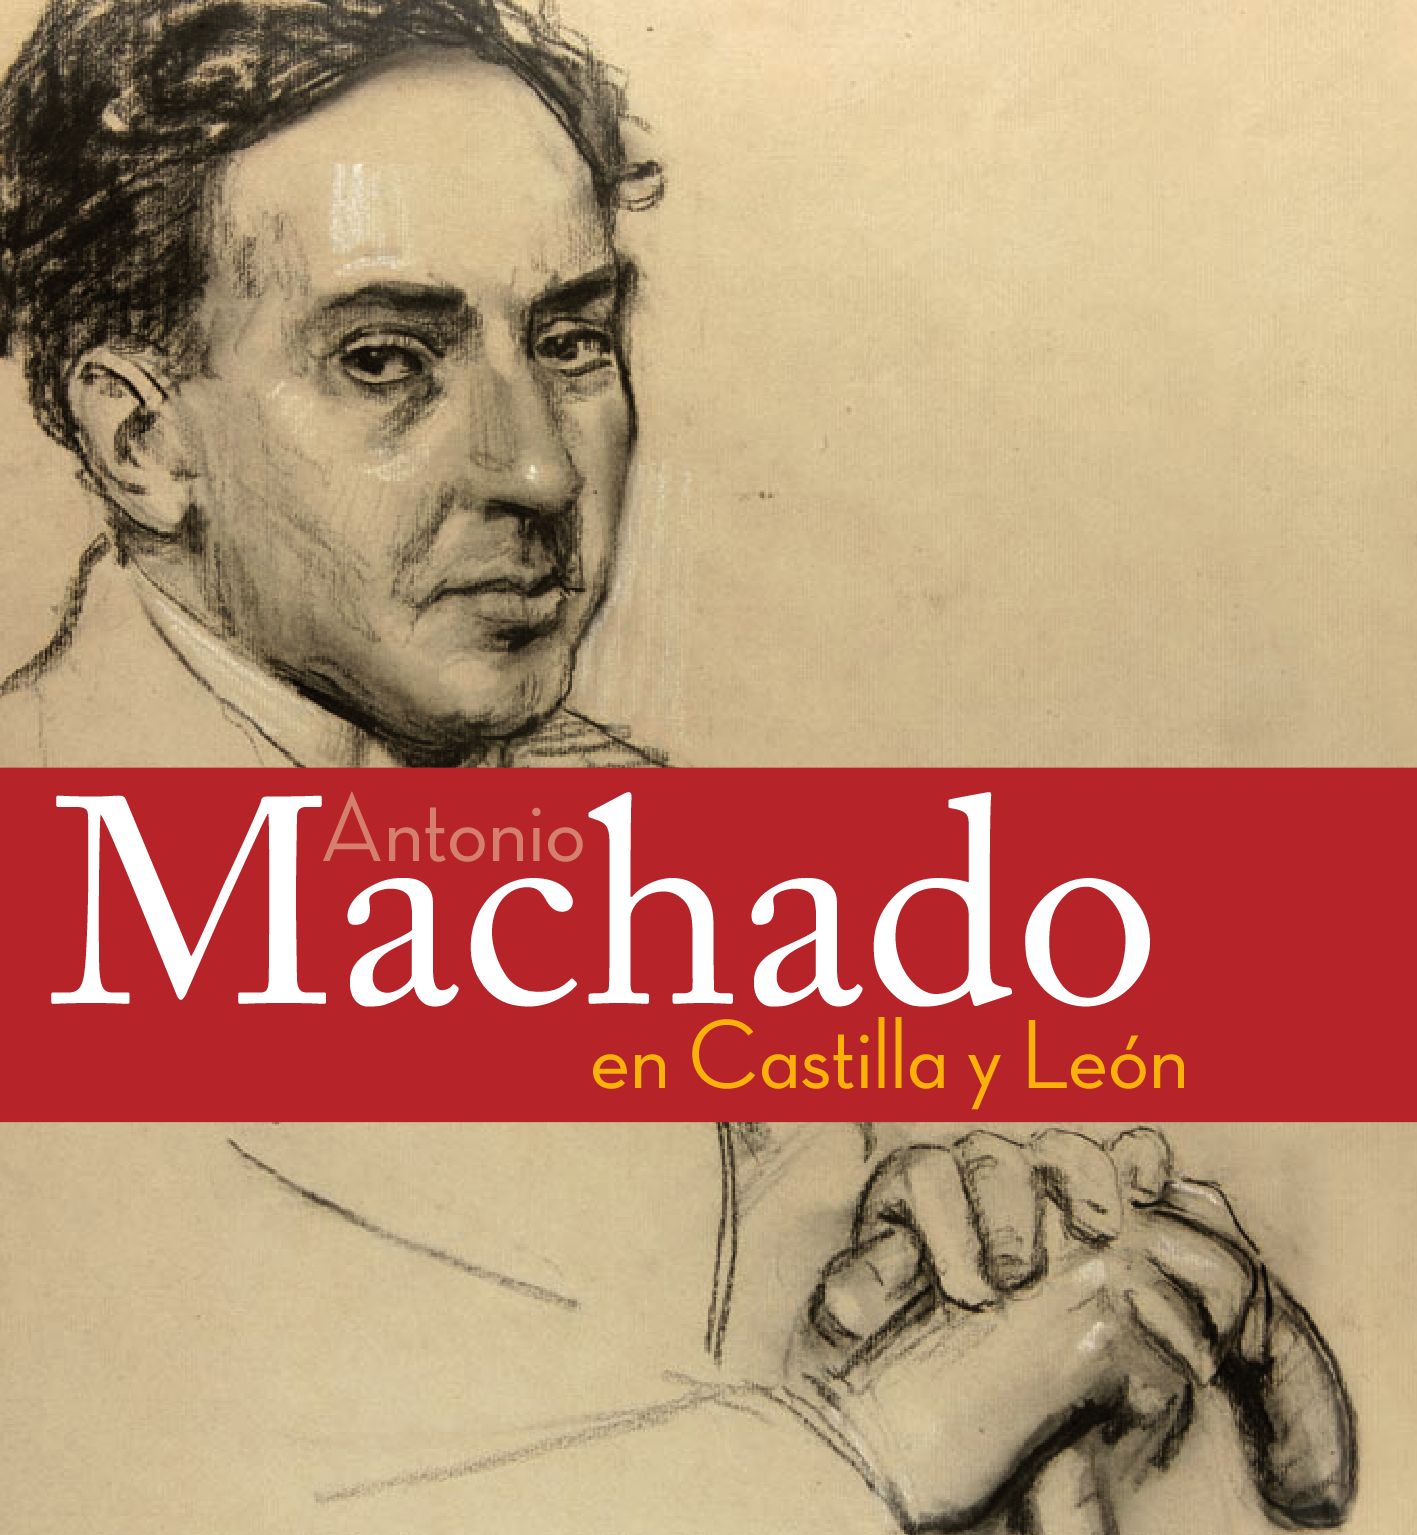 Recuerdos inmortales de Antonio Machado: La huella imborrable del poeta en nuestra memoria